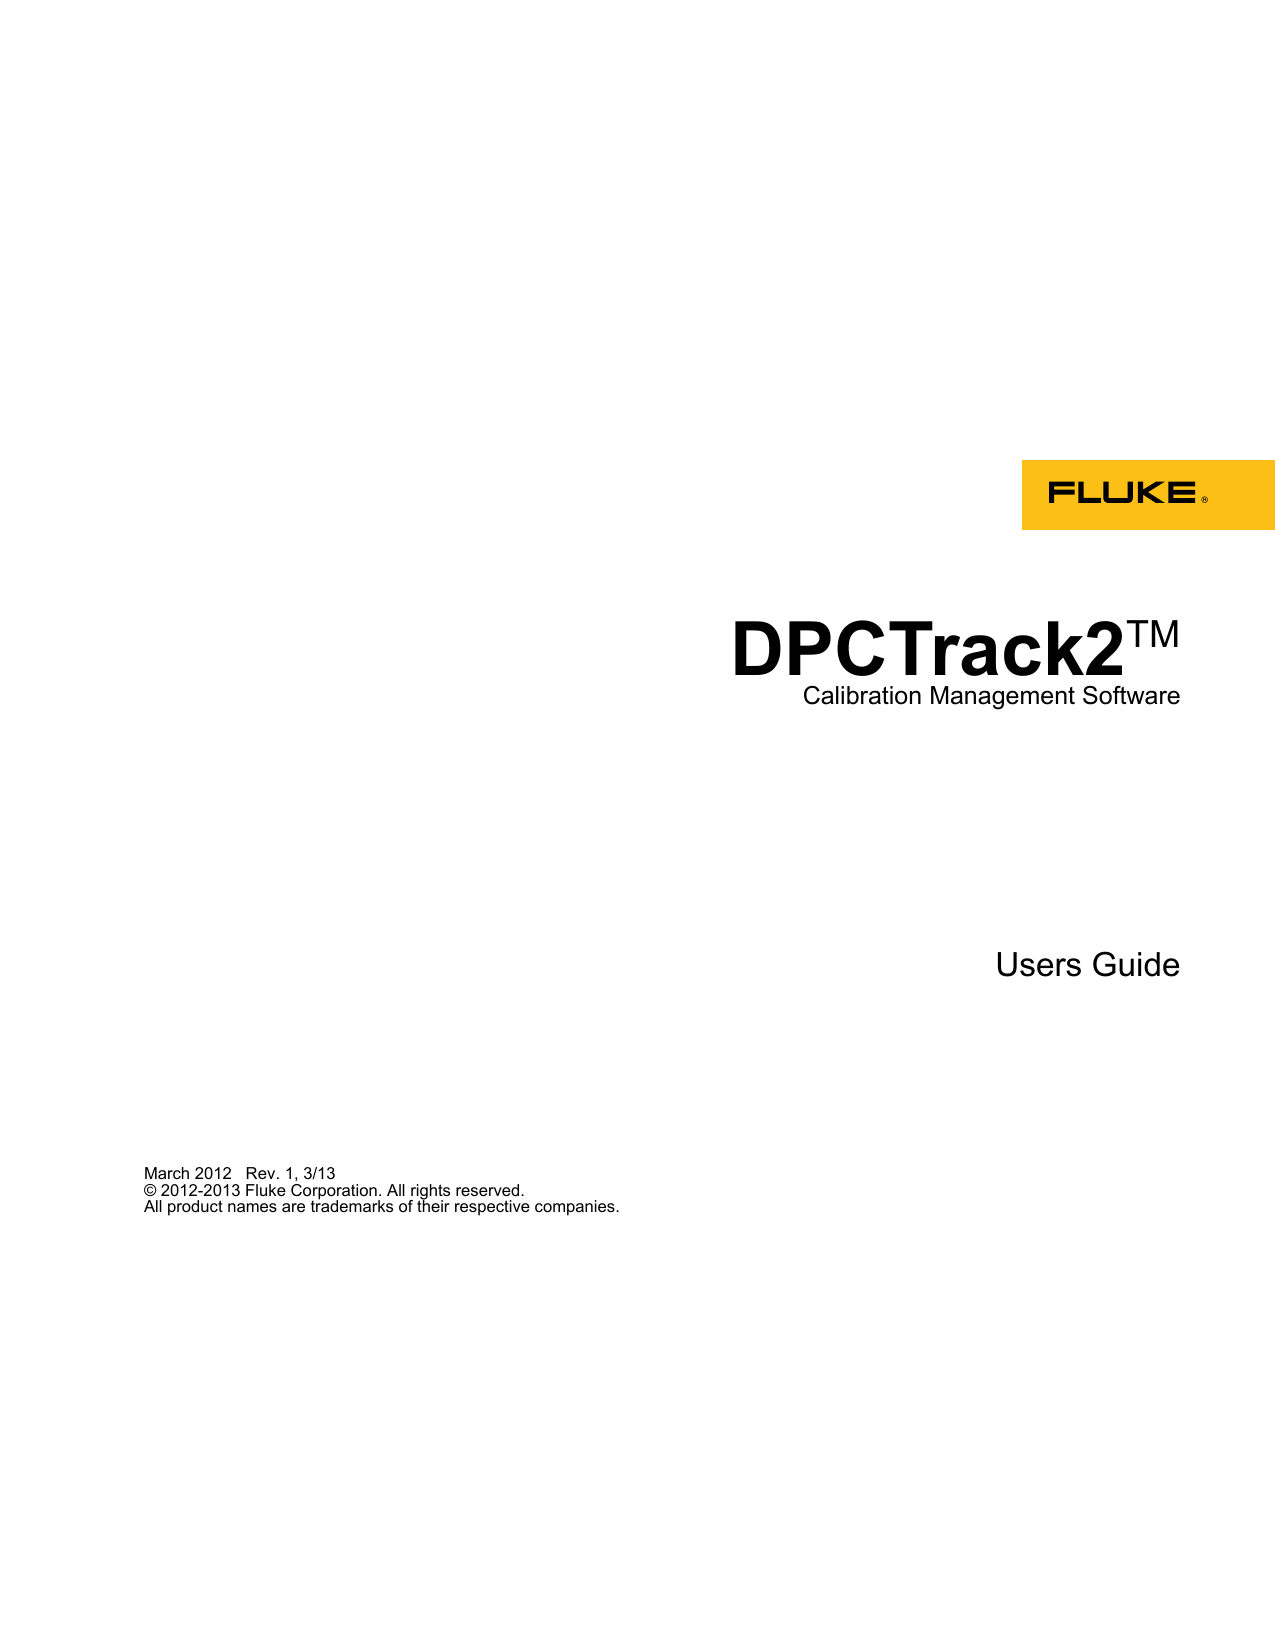 prinect package designer 2010 download